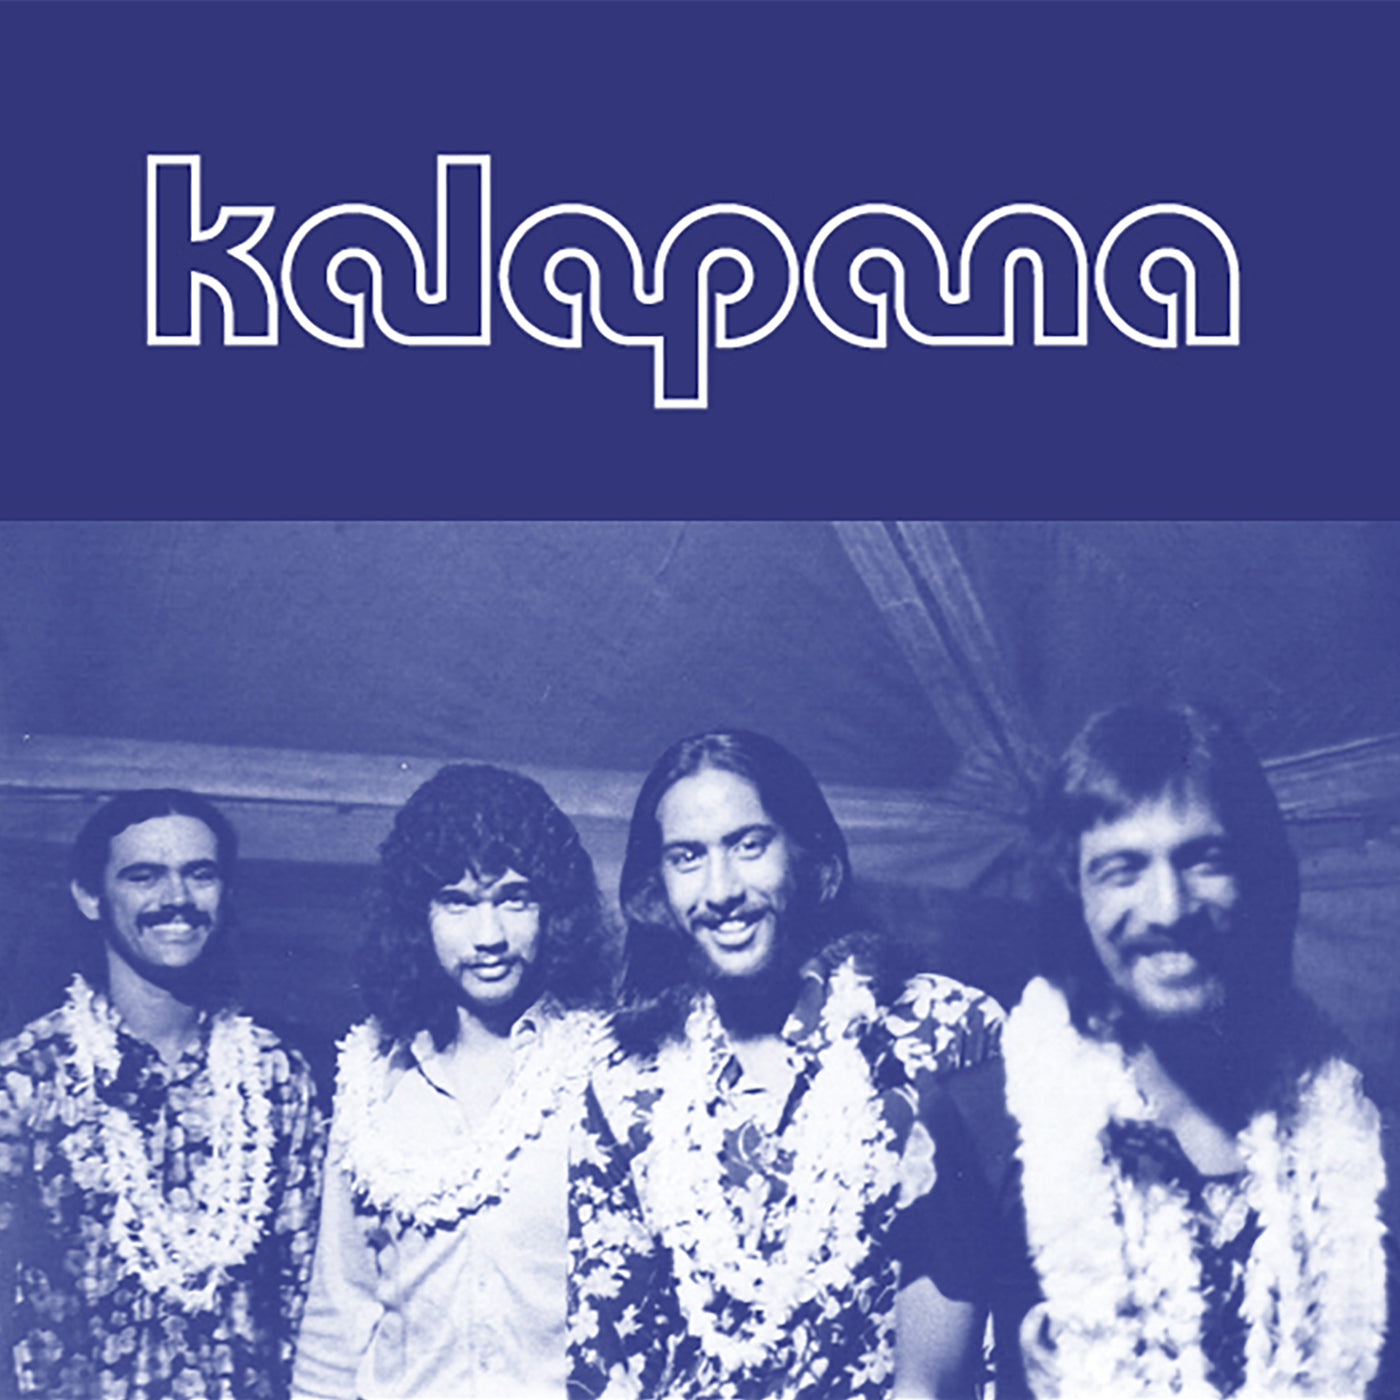 Kalapana - 7" Box Set: Aloha Got Soul selects Kalapana (AGS-072)